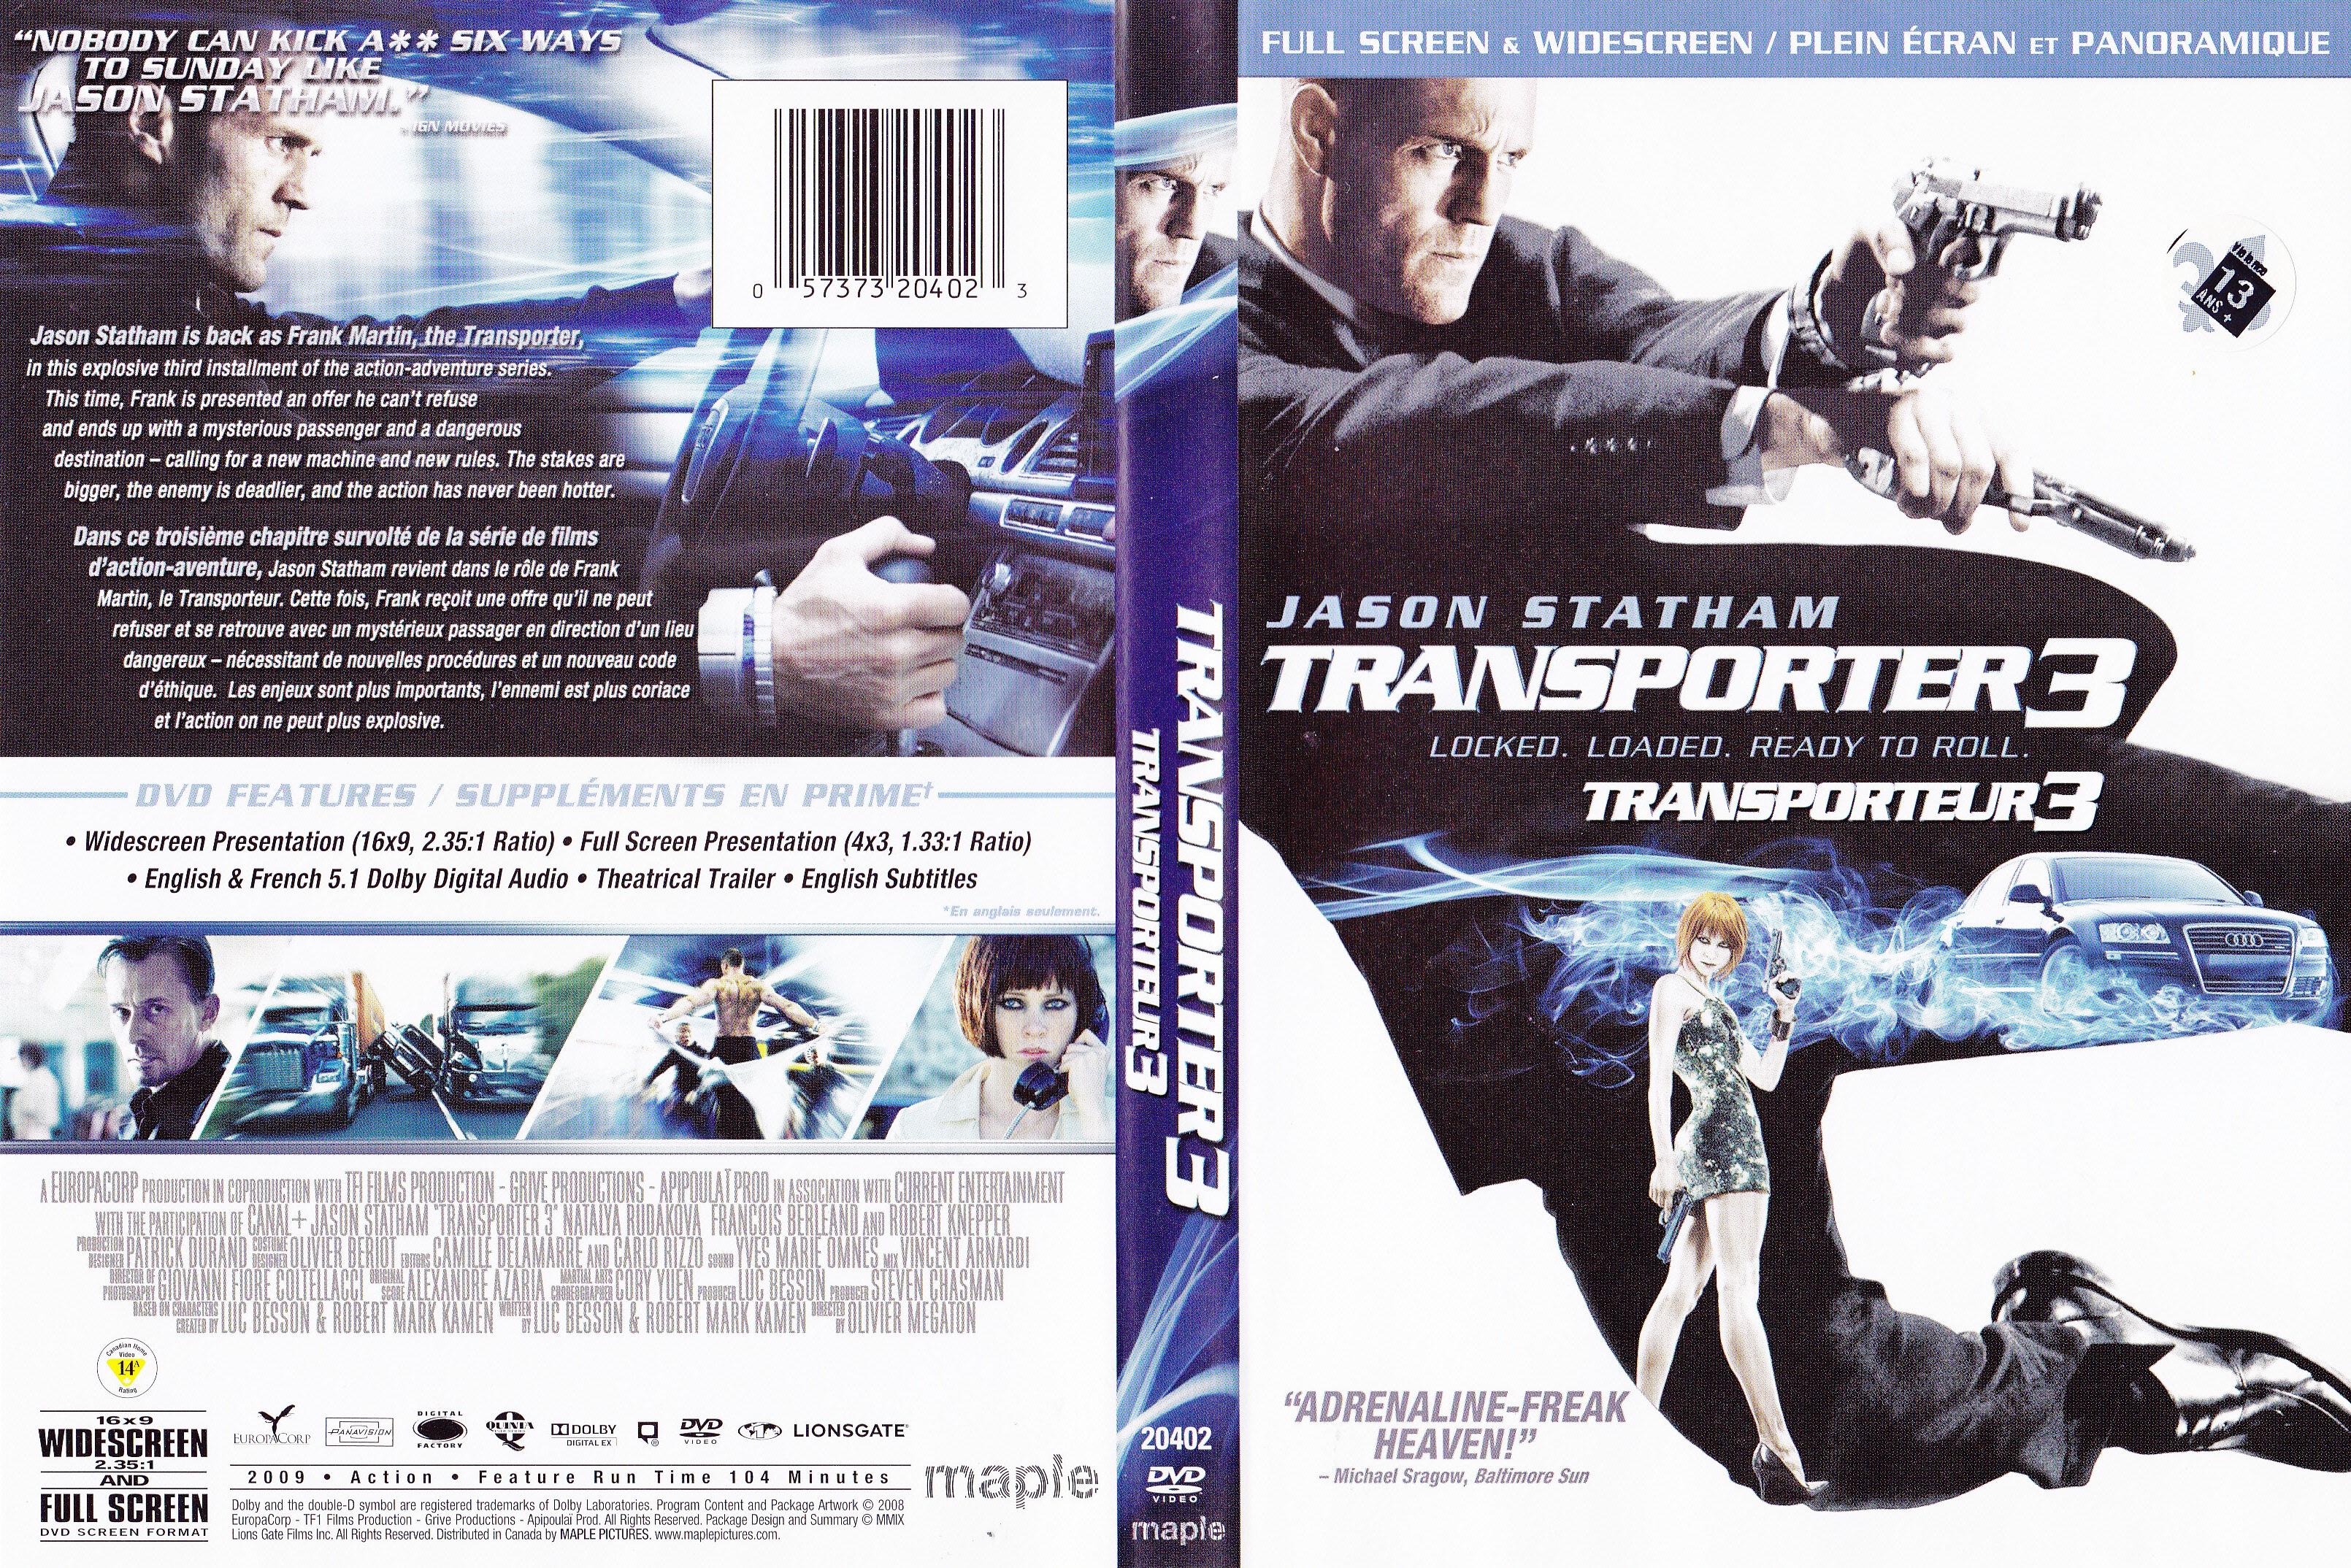 Jaquette DVD The transporter 3 - Le transporteur 3 (canadienne)